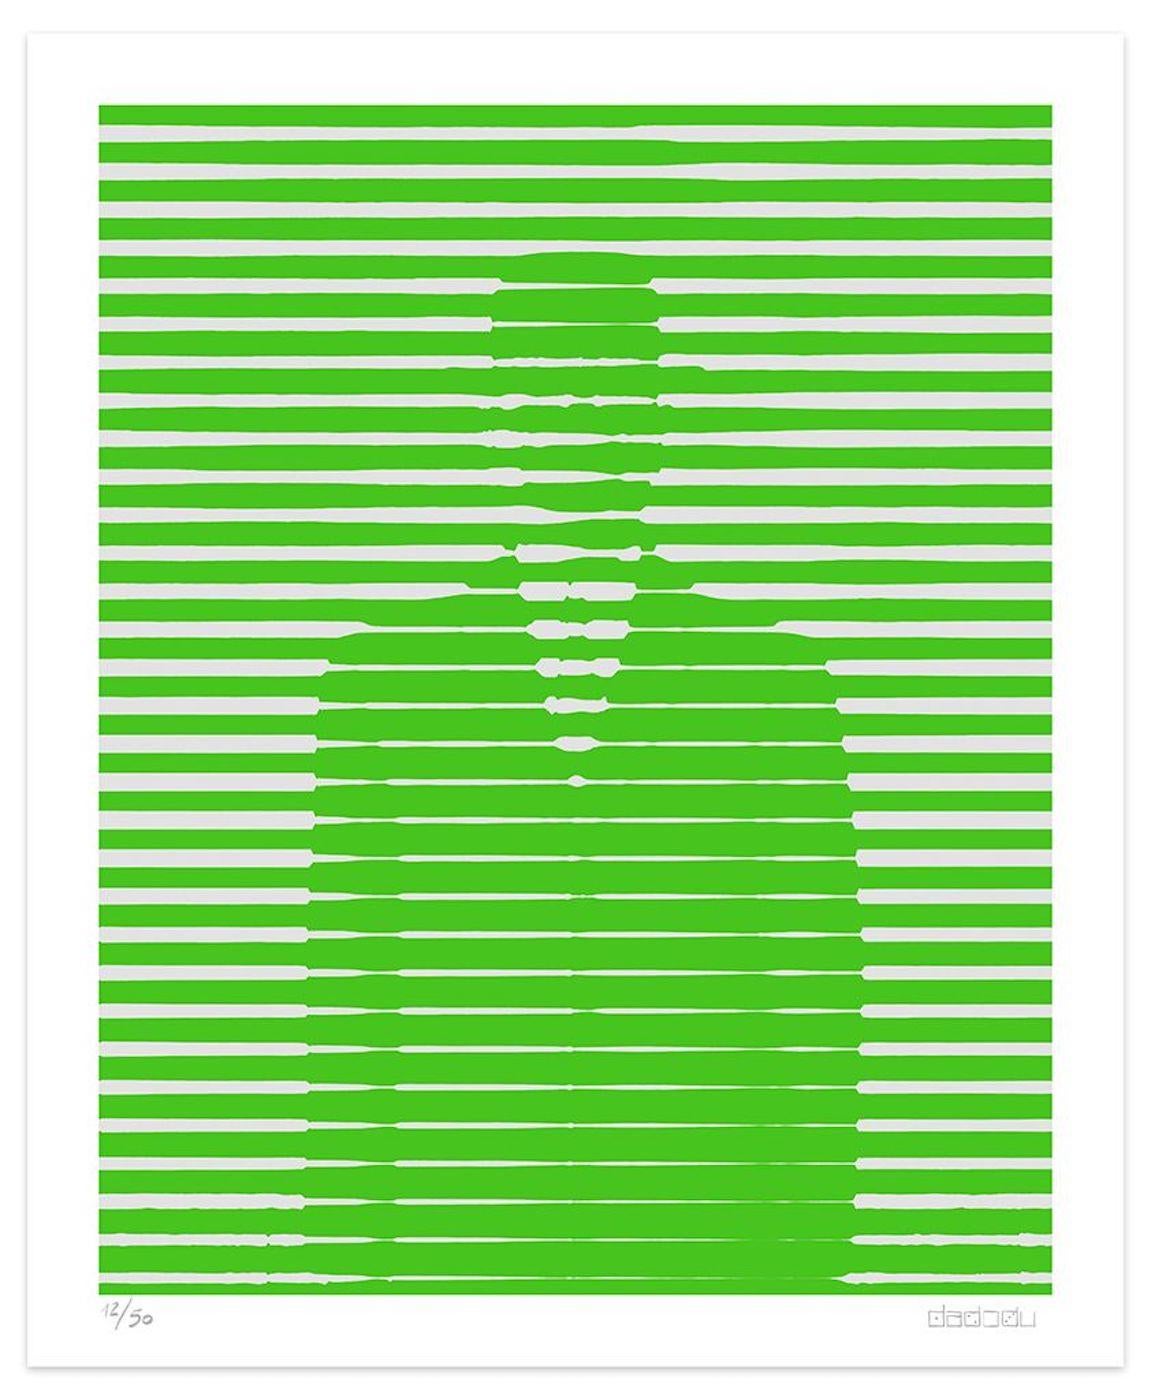 Dimensions de l'image : 60 x 48,1 cm.

Green And Grey Lines est une élégante giclée réalisée par l'artiste contemporain Dadodu en 2016.

Cette œuvre d'art originale représente Décalcomanie de René Magritte avec des lignes blanches horizontales sur